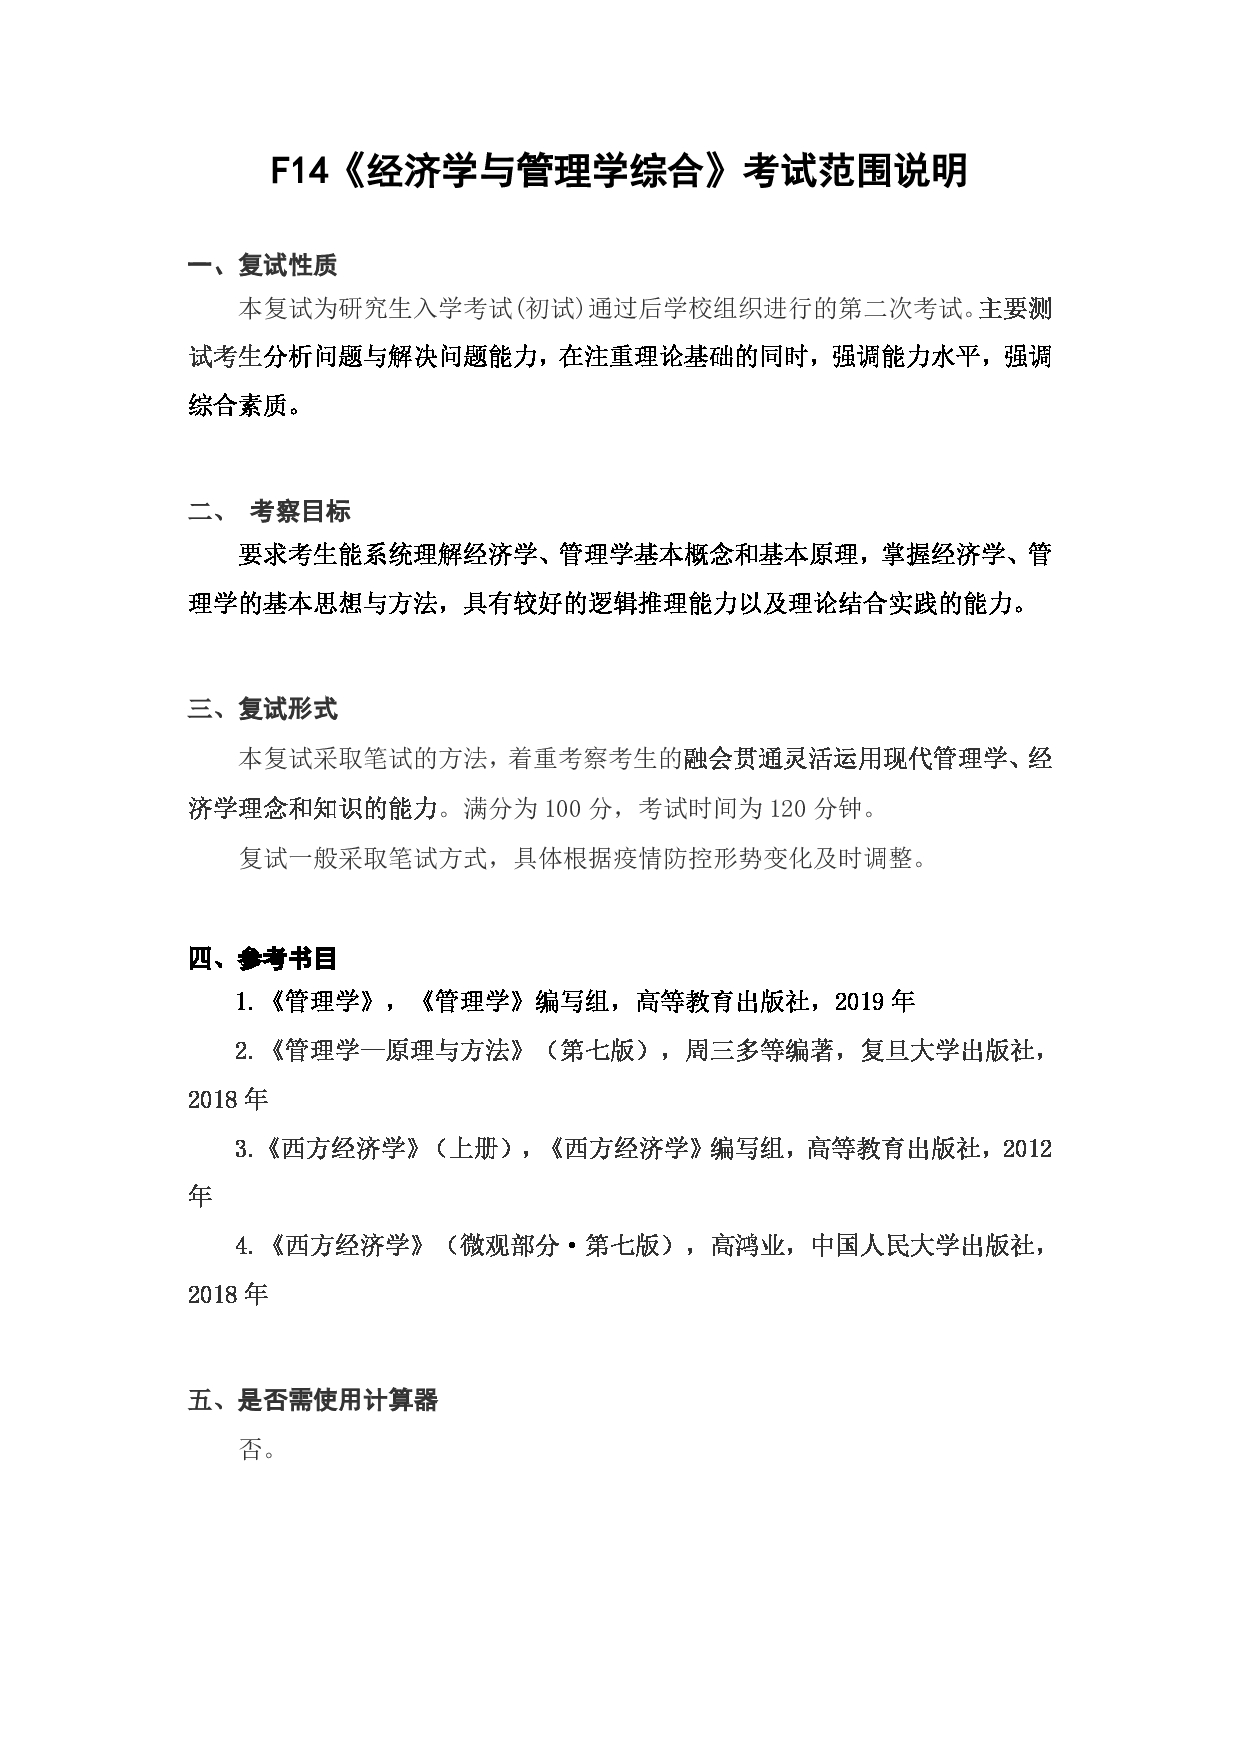 上海海洋大学2023年考研自命题科目 F14《经济学与管理学综合》 考试范围第1页